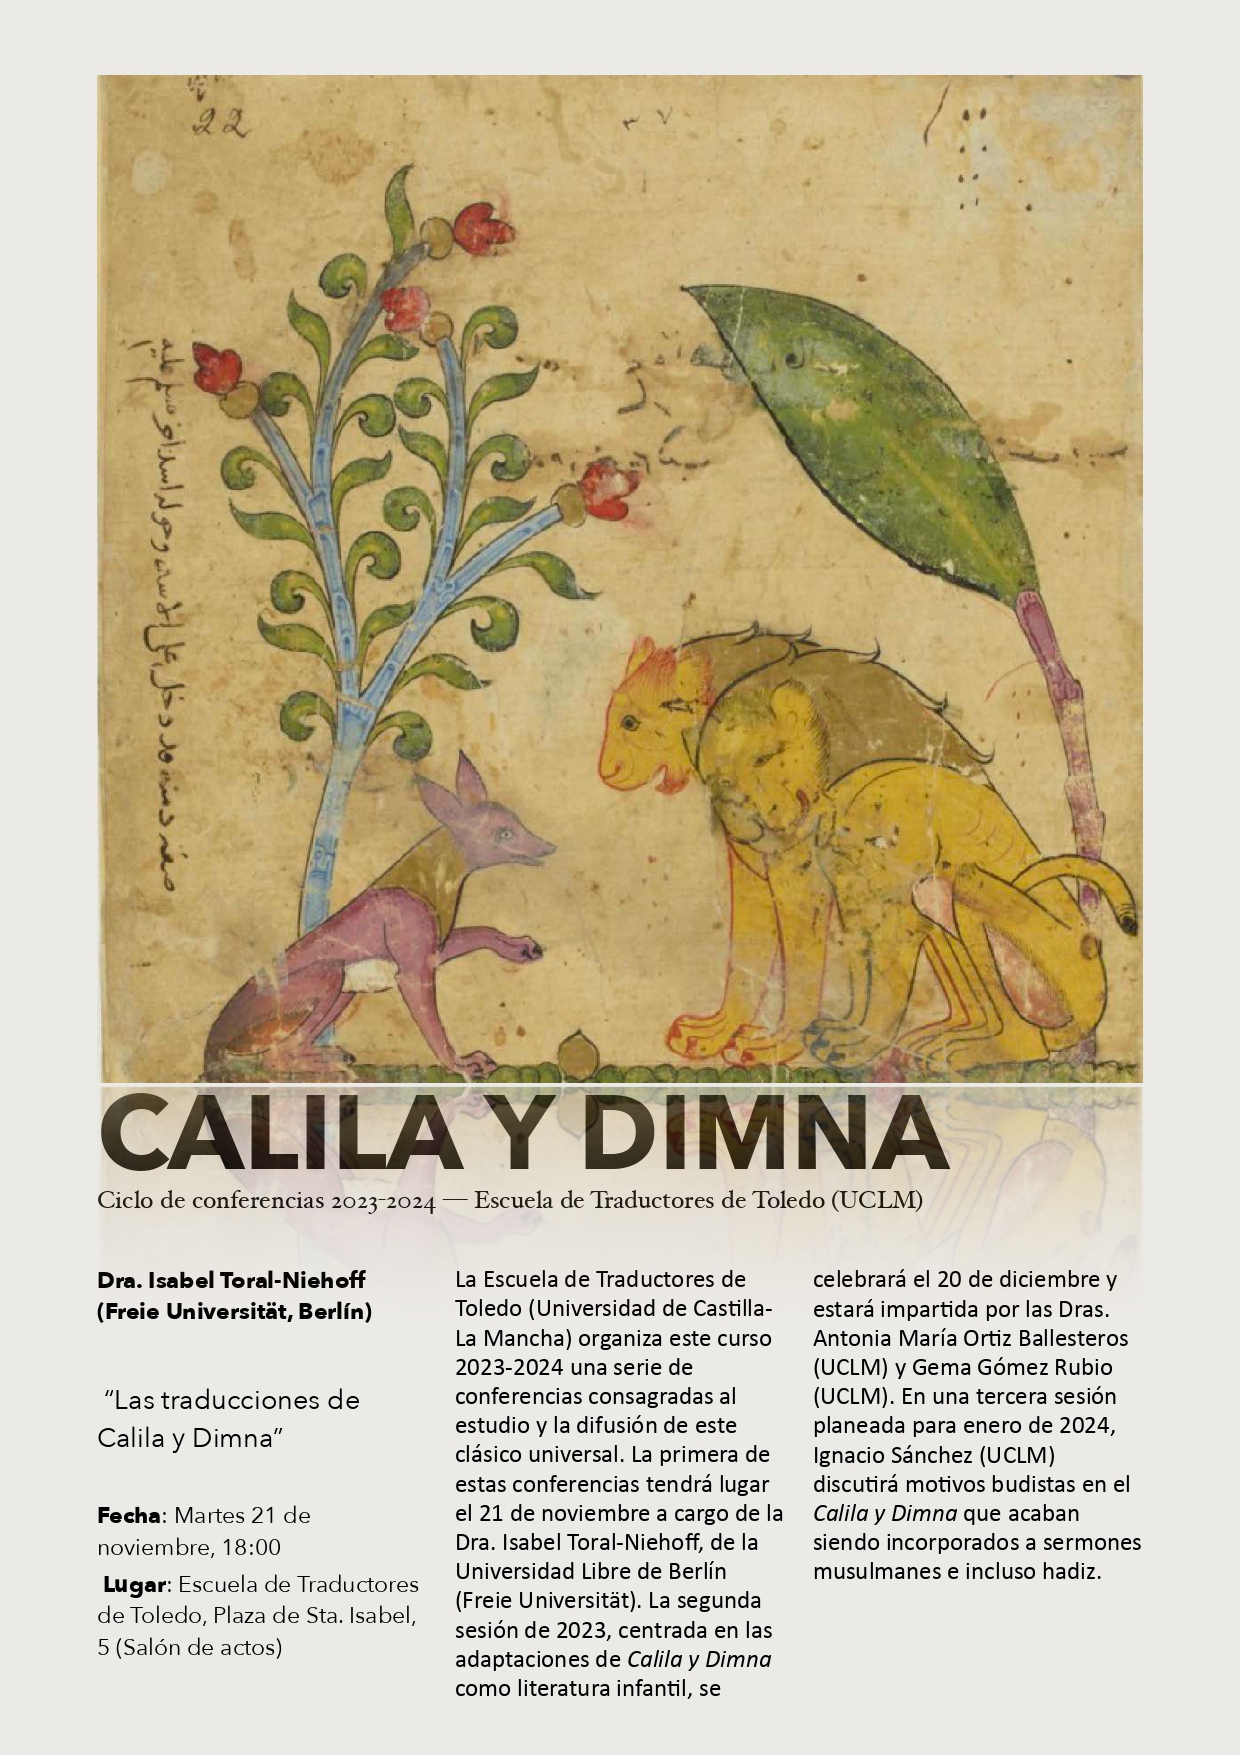 Ciclo de conferencias Calila y Dimna